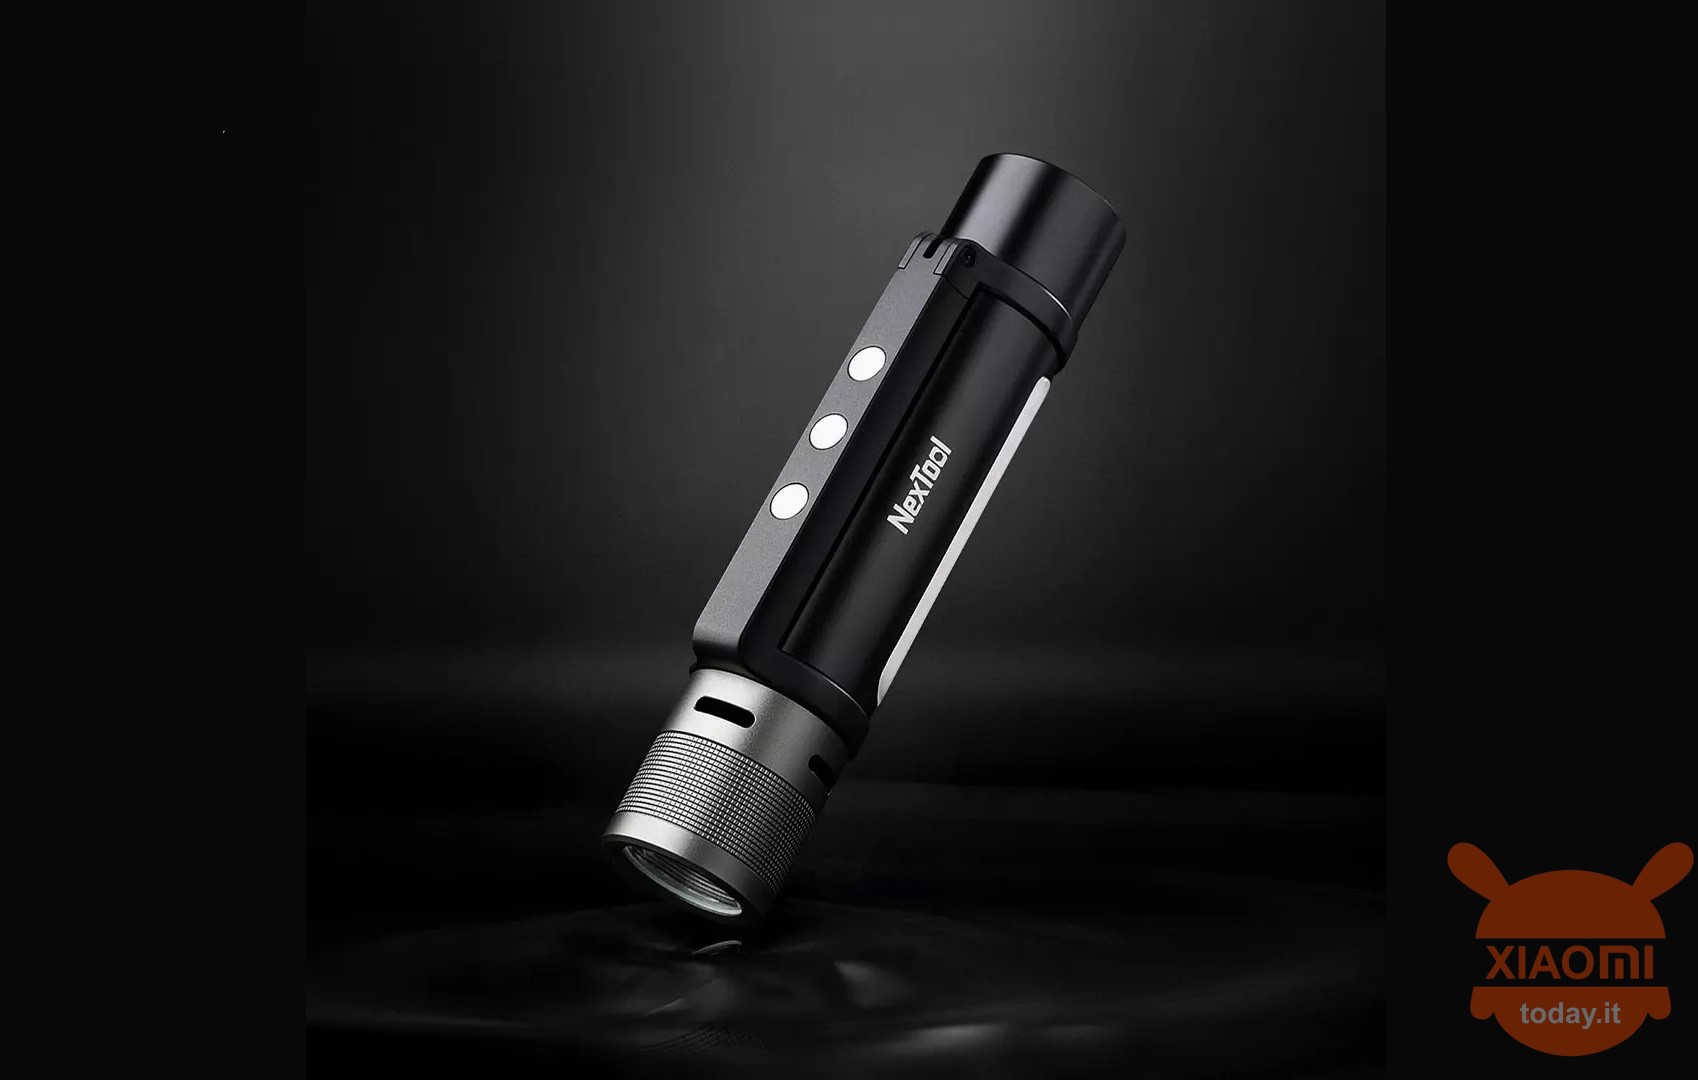 NexTool 6-in-1 flashlight